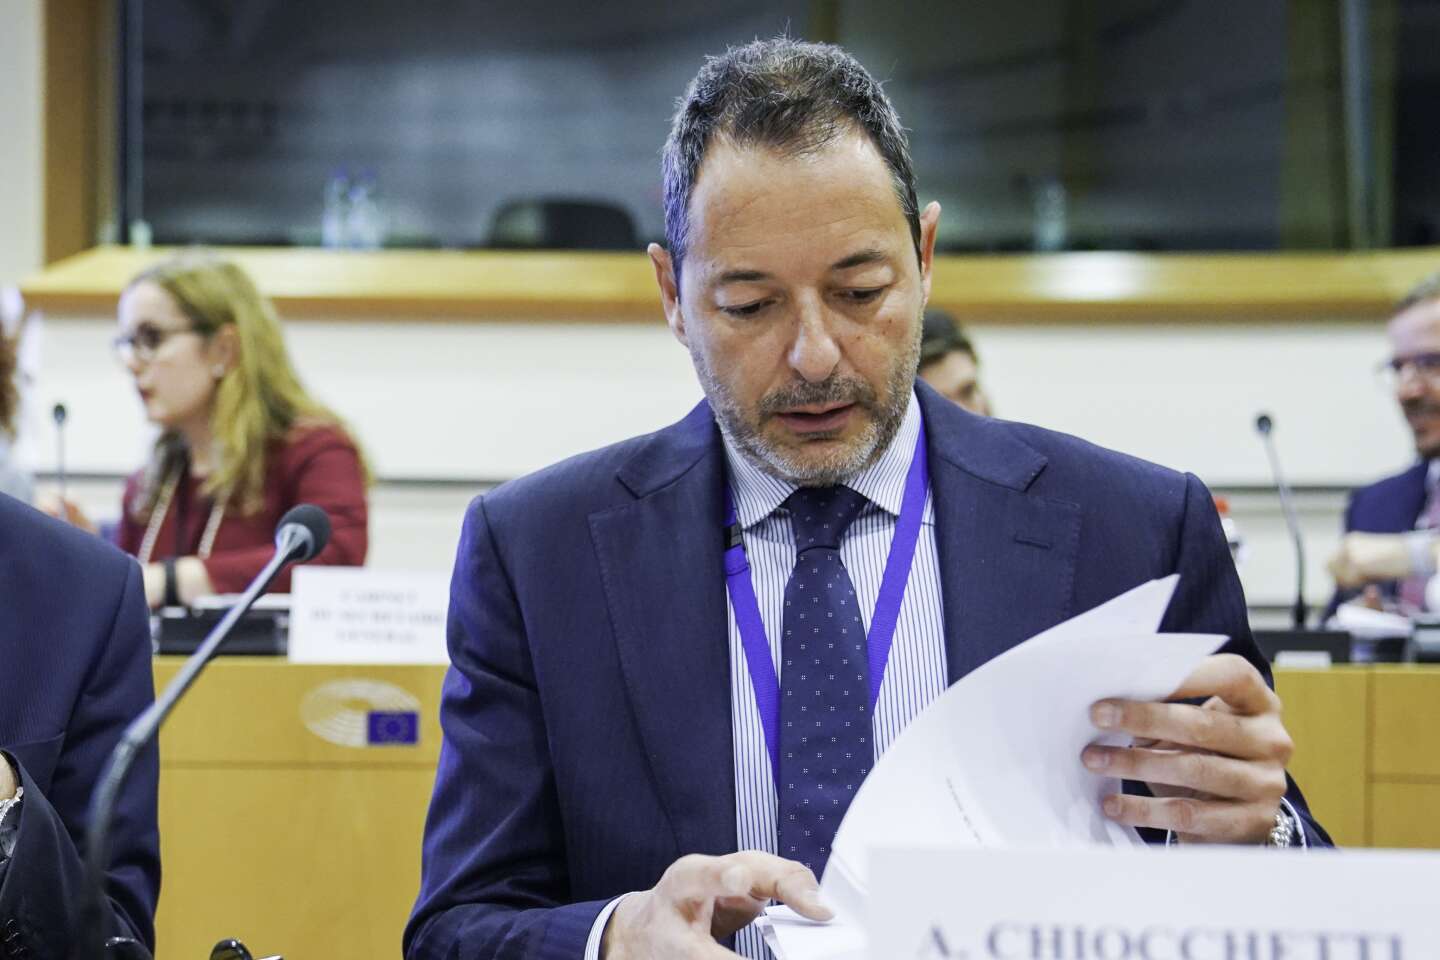 L’italiano Alessandro Ciocchetti ha prestato giuramento come nuovo segretario generale del Parlamento europeo